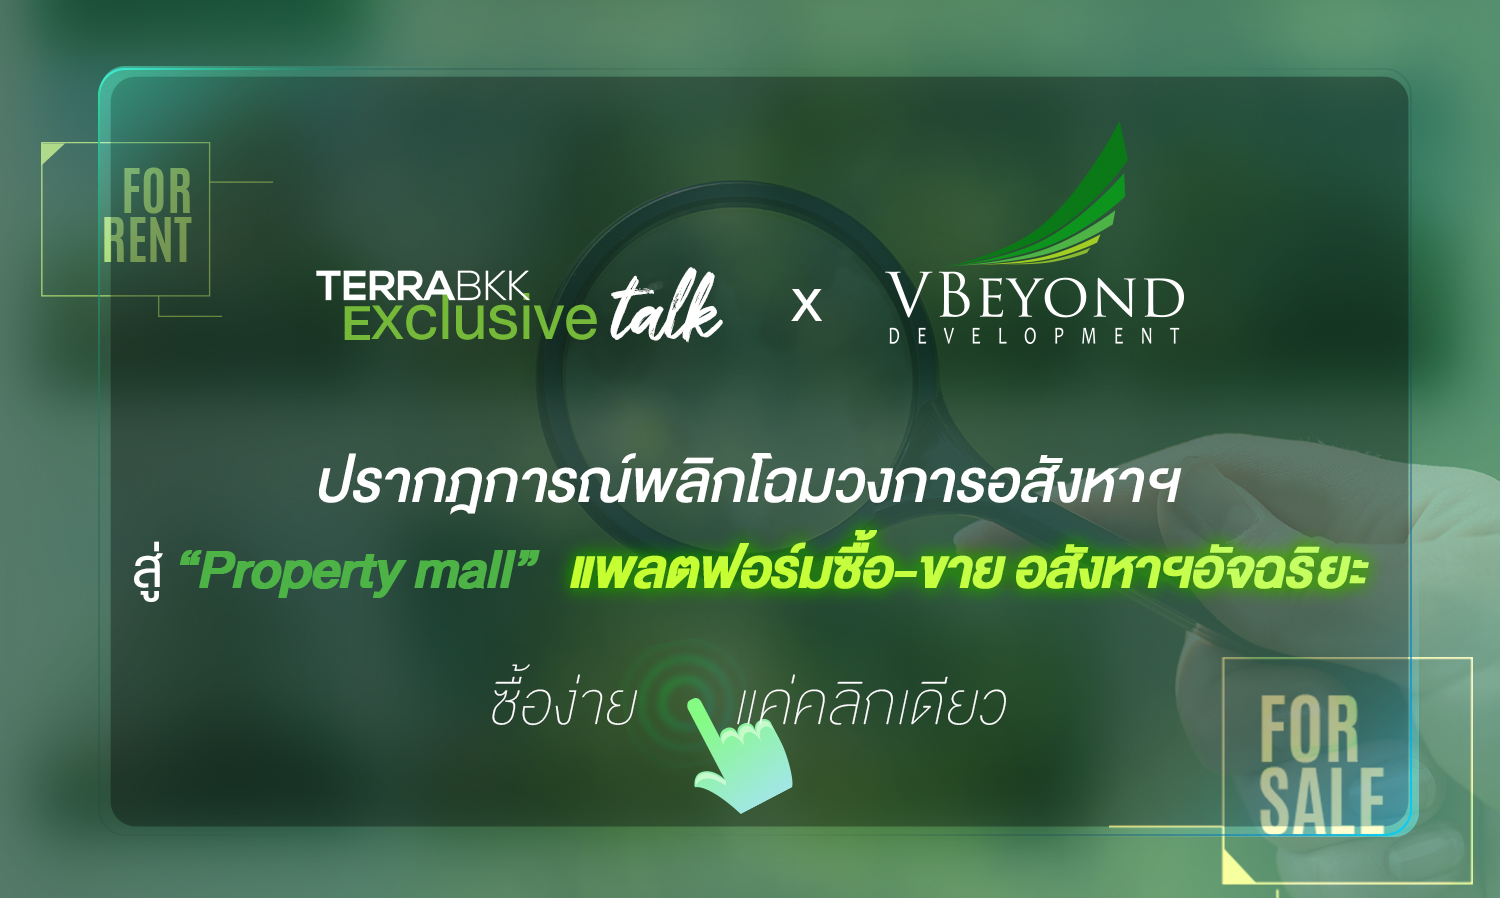 TerraBKK Exclusive talk วีบียอนด์ สร้างปรากฎการณ์พลิกโฉมวงการอสังหาฯ สู่ “Property mall” แพลตฟอร์มซื้อ-ขาย อสังหาฯอัจฉริยะ ซื้อง่ายแค่คลิกเดียว 